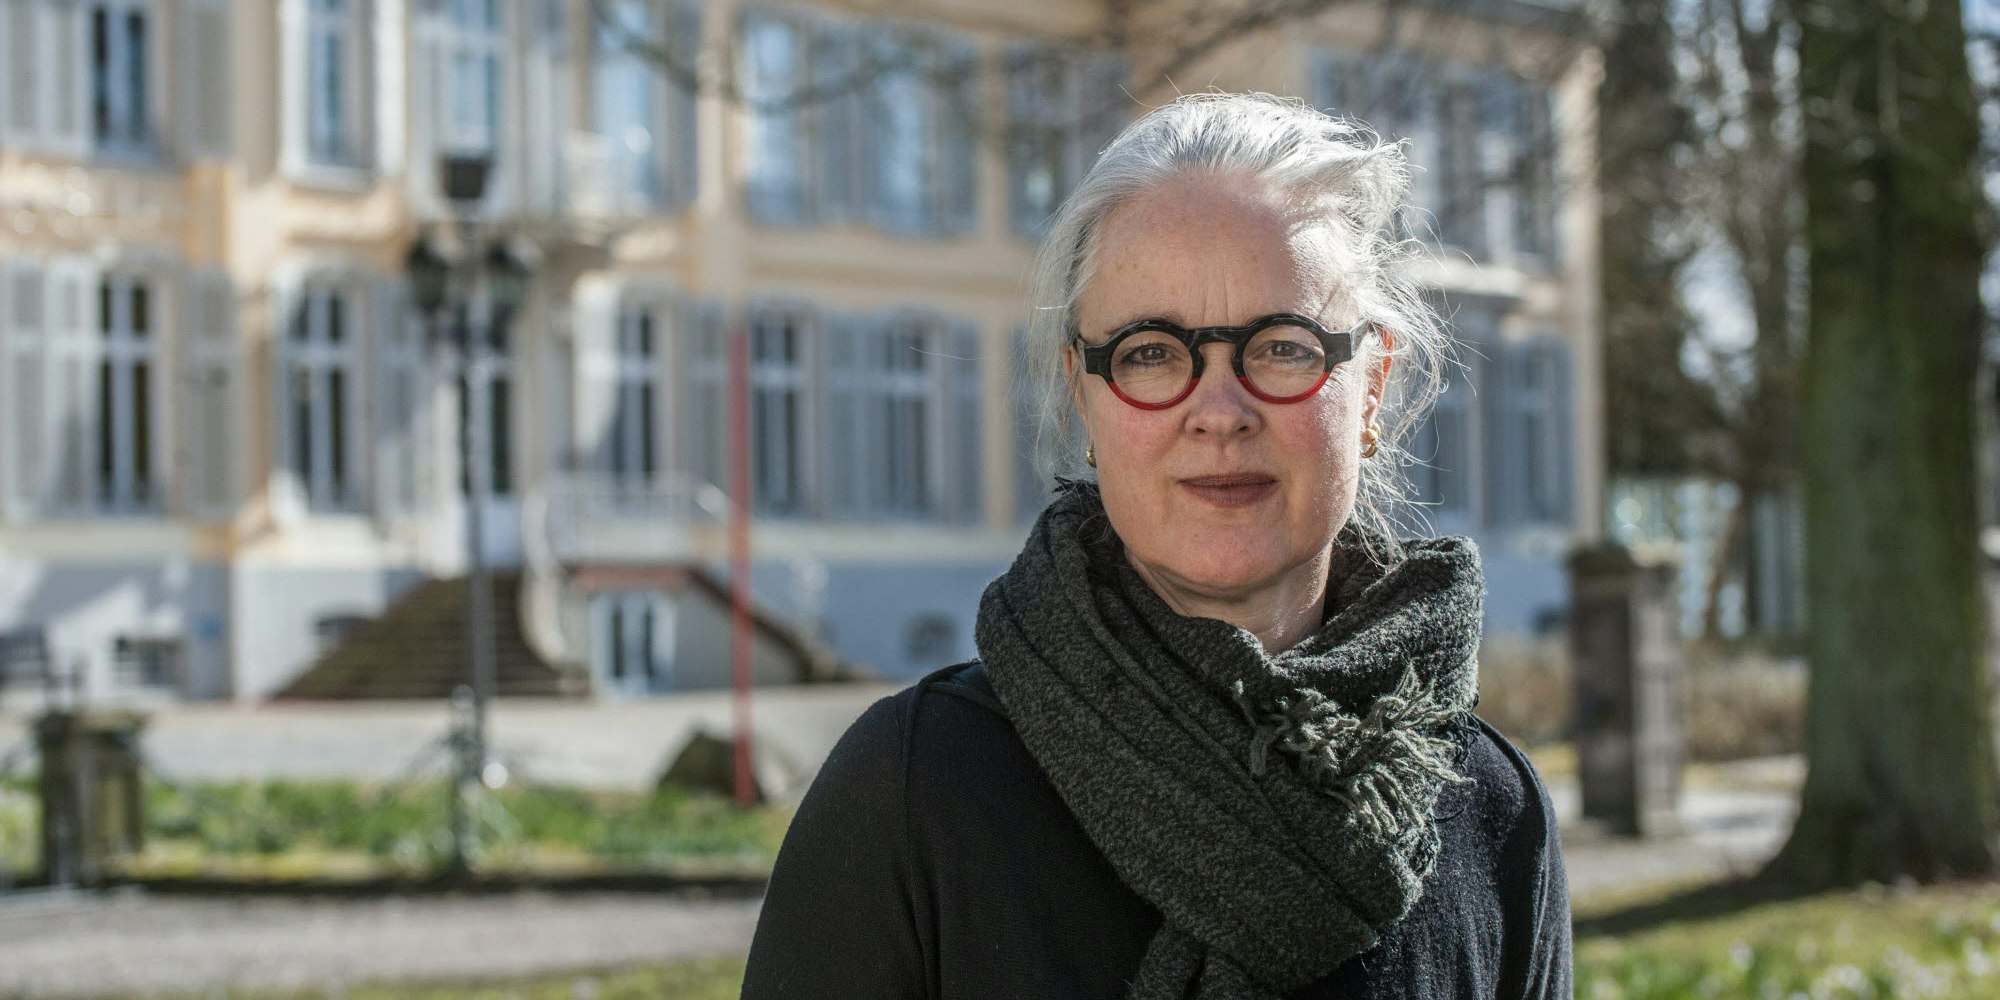 Vergangenheit und Zukunft des Museums im Blick hat Susanne Wedewer-Pampus, Tochter des früheren Direktors Rolf Wedewer.